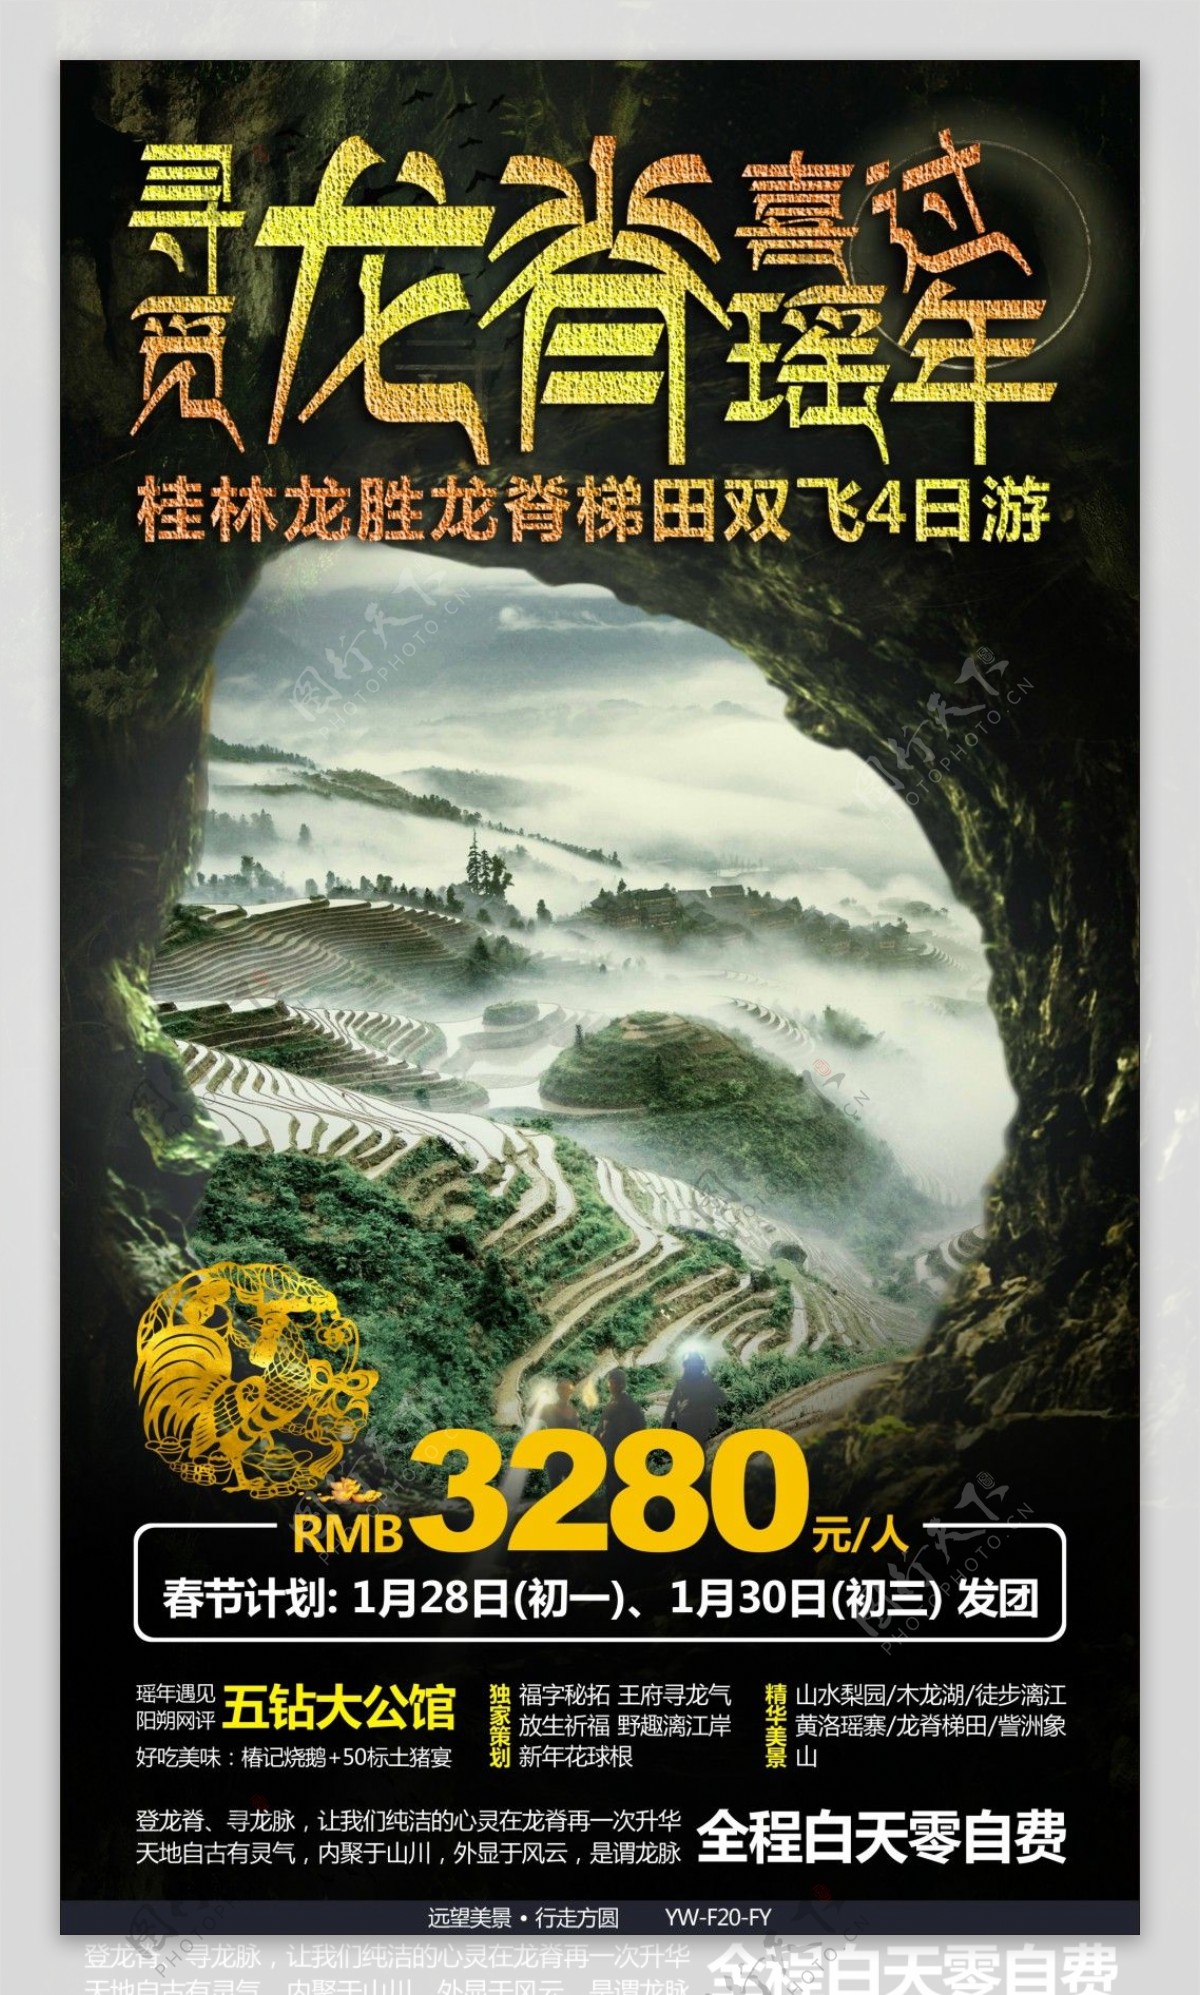 龙脊梯田旅游广告宣传图